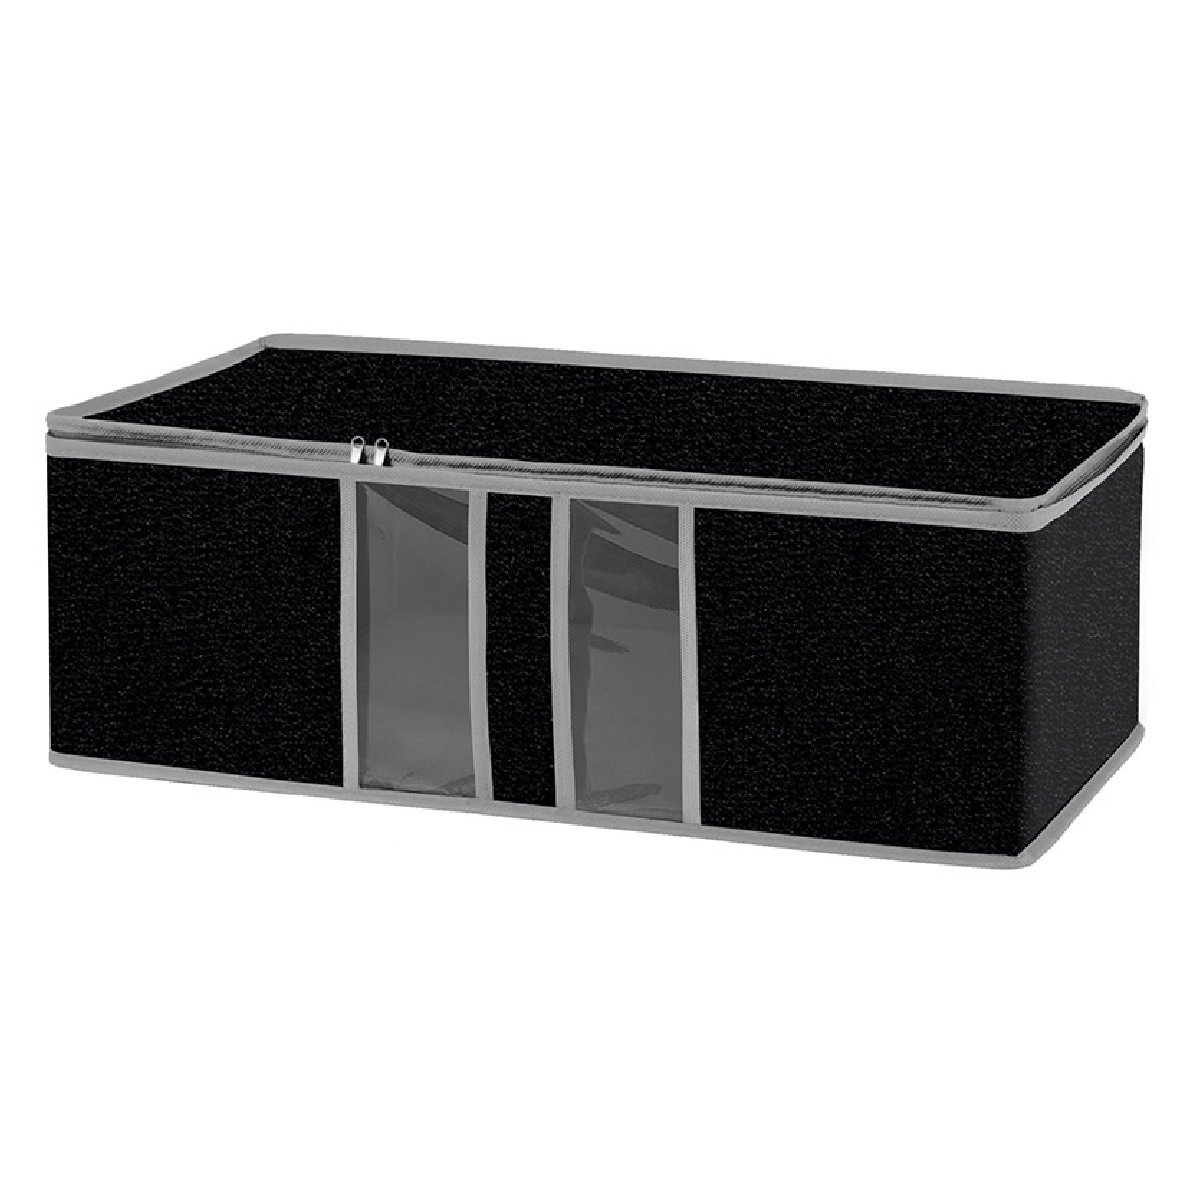 Ящик текстильный для хранения вещей Black 60x30x20 см (312616)Купить